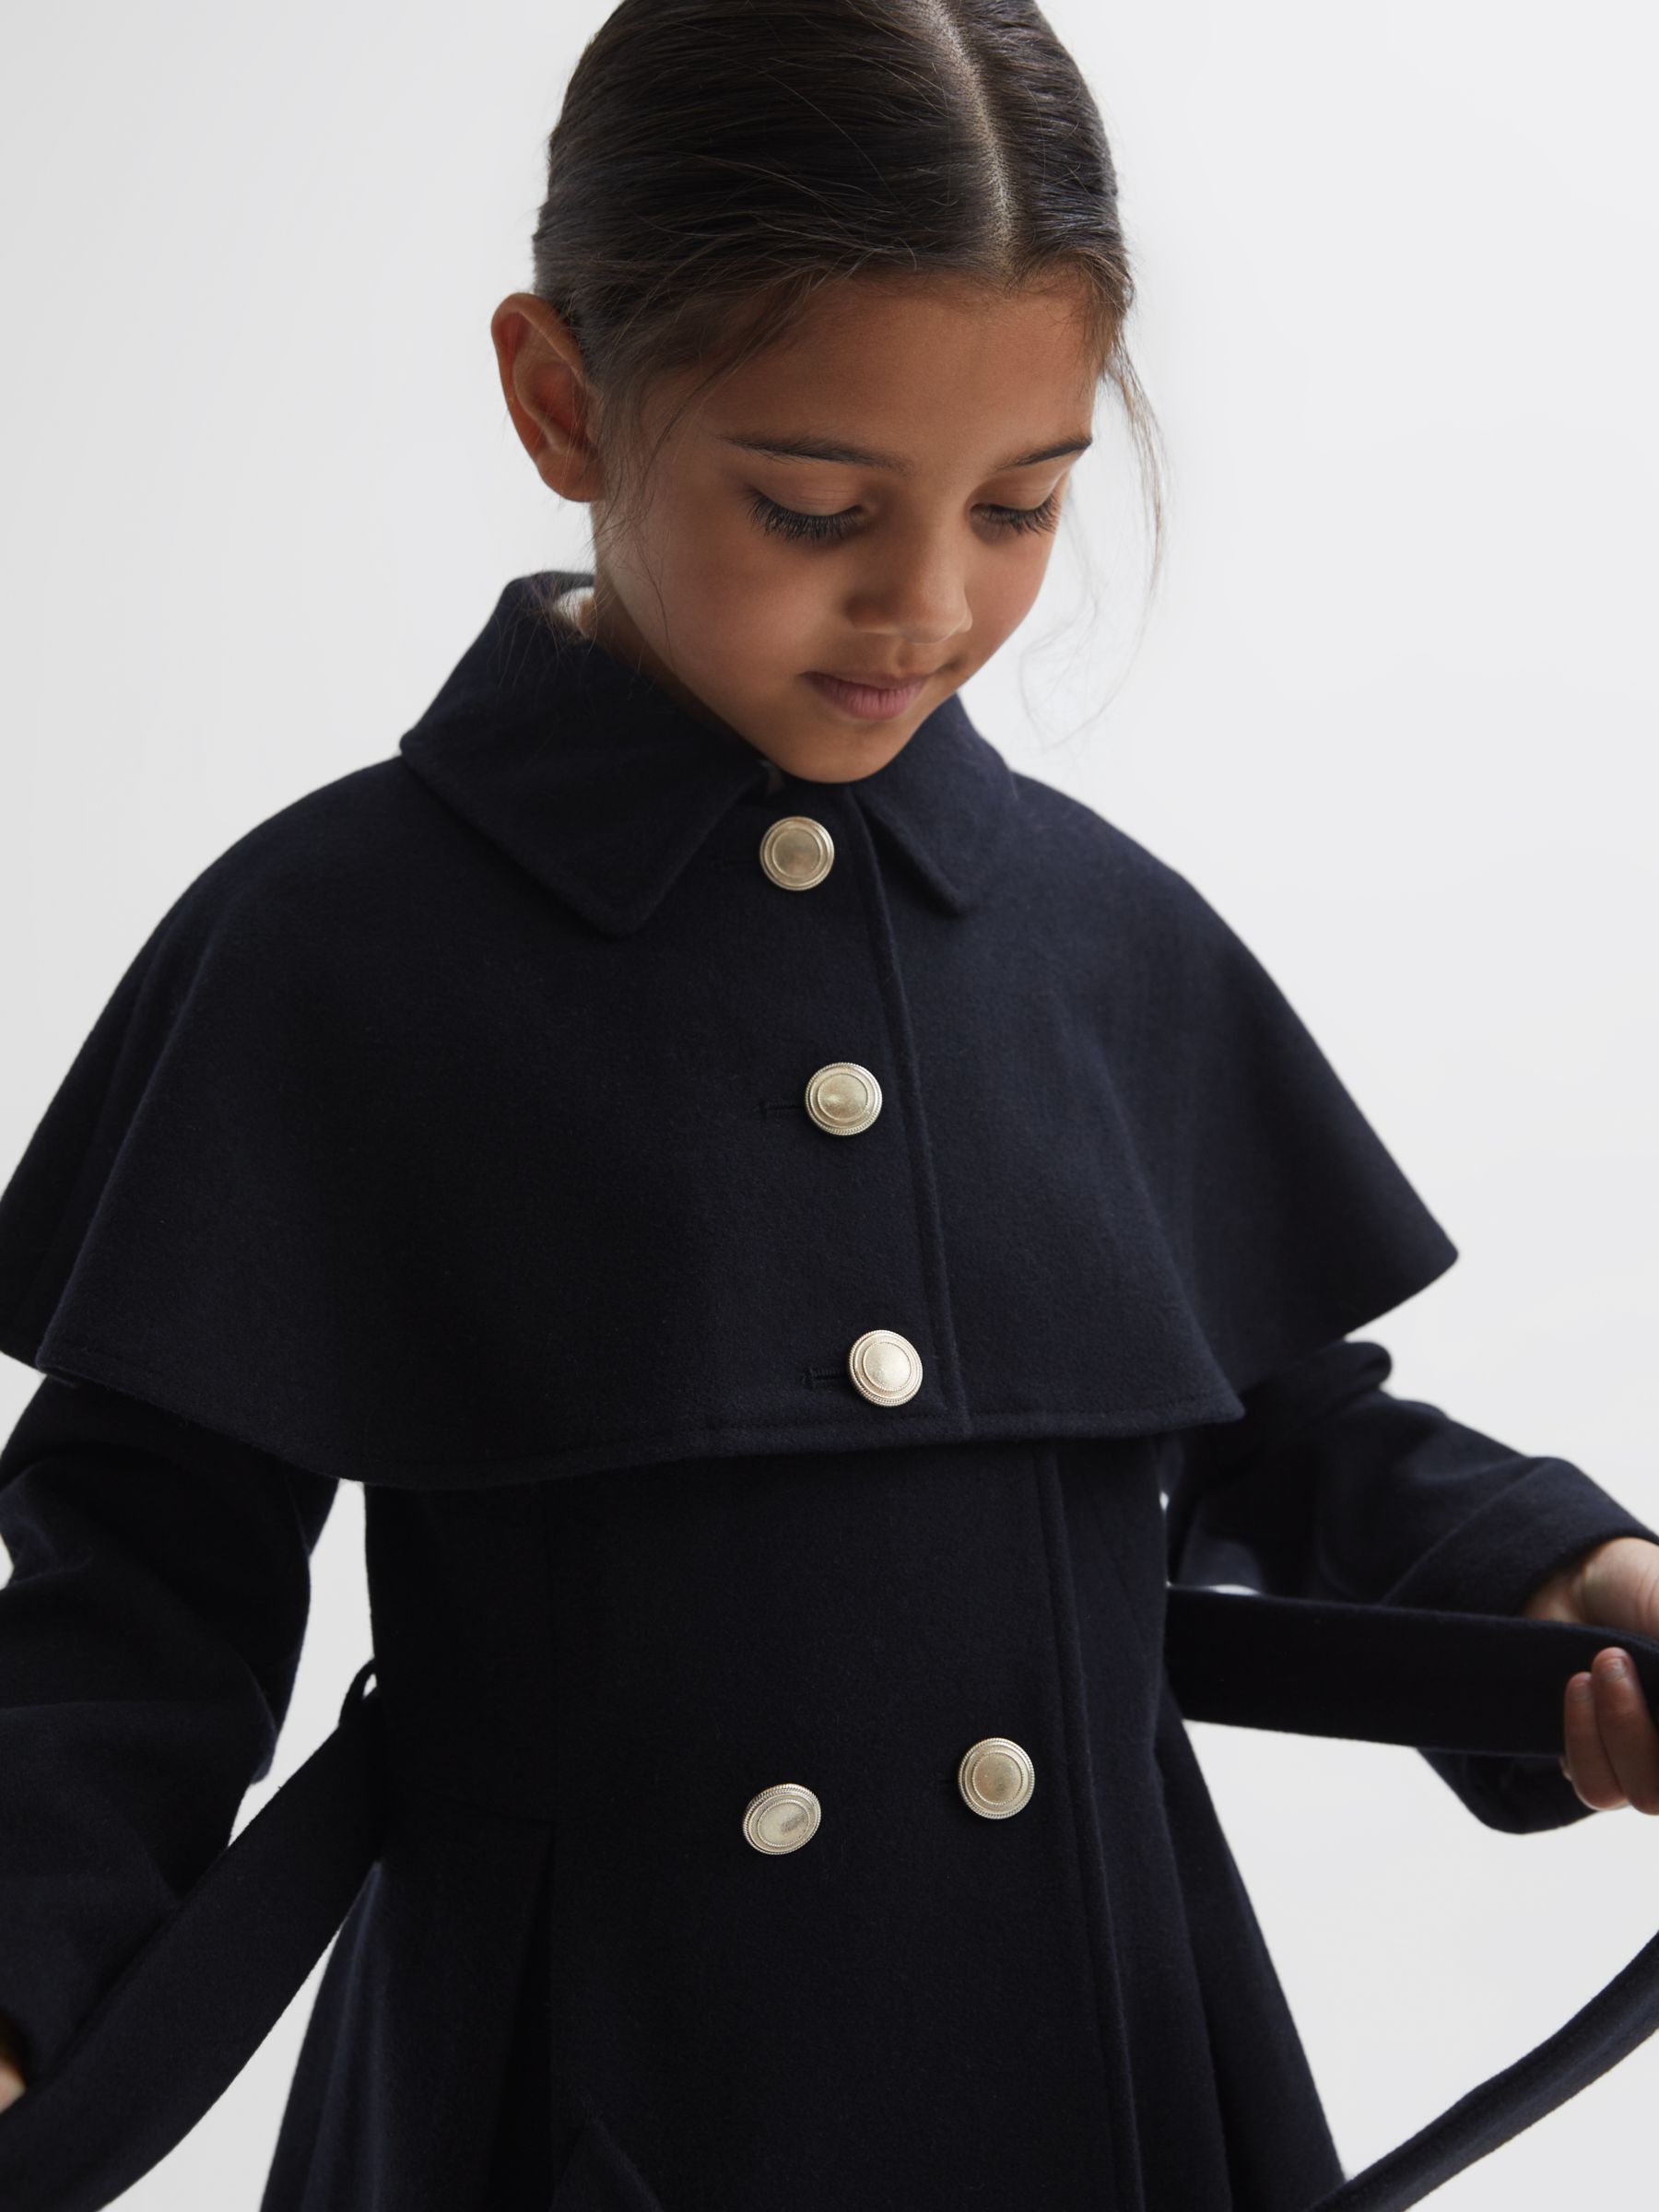 Buy Reiss Kids' Rose Shoulder Cape Coat, Navy Online at johnlewis.com